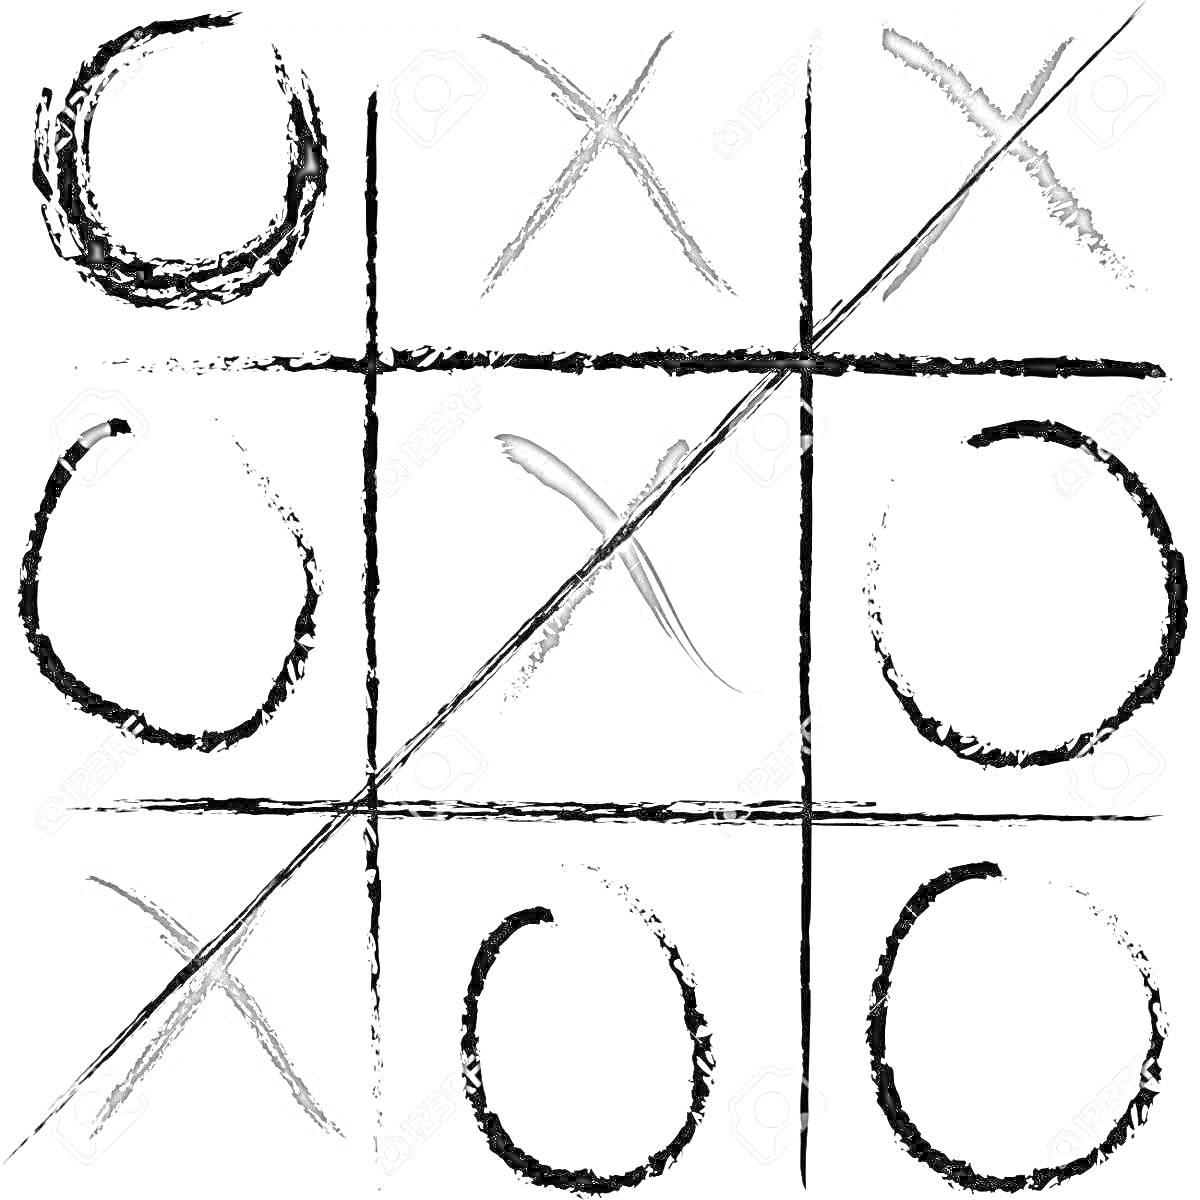 Раскраска крестики нолики на текстурированном фоне, линия победителя через диагональ